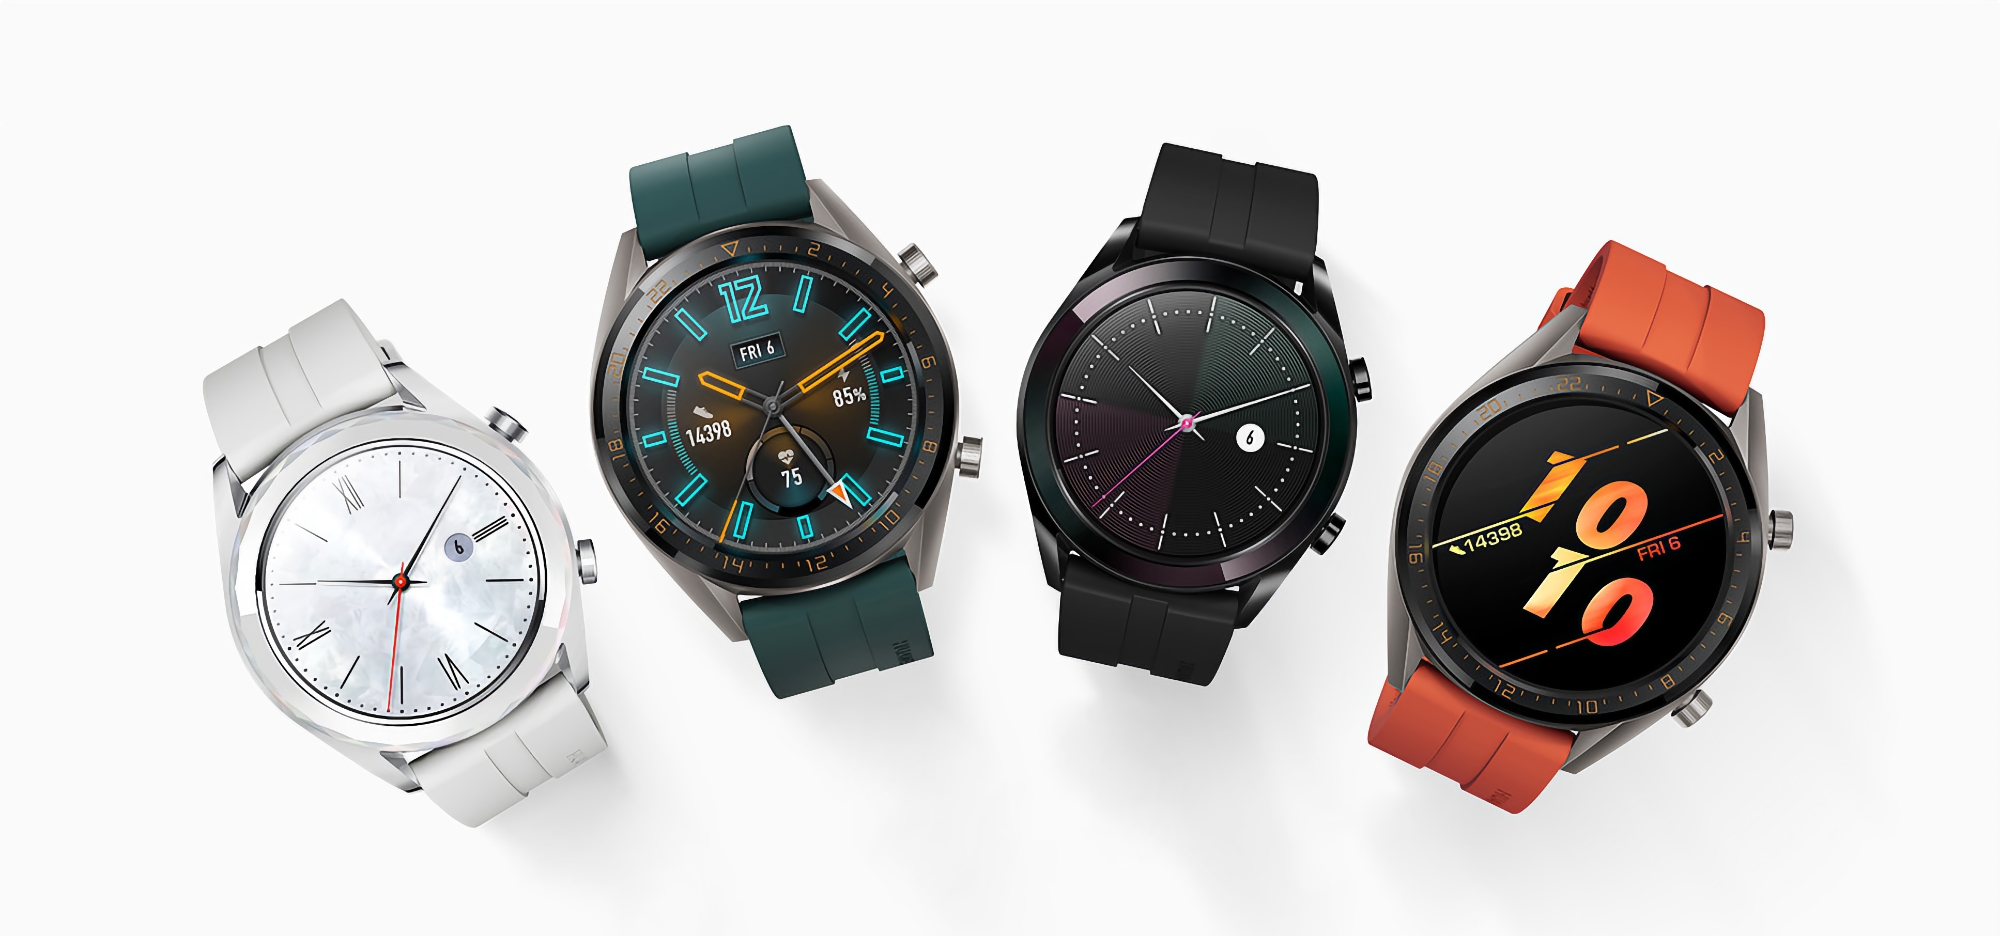 Wydano ważną aktualizację oprogramowania dla Huawei Watch GT 2: co nowego i kiedy czekać na oprogramowanie sprzętowe